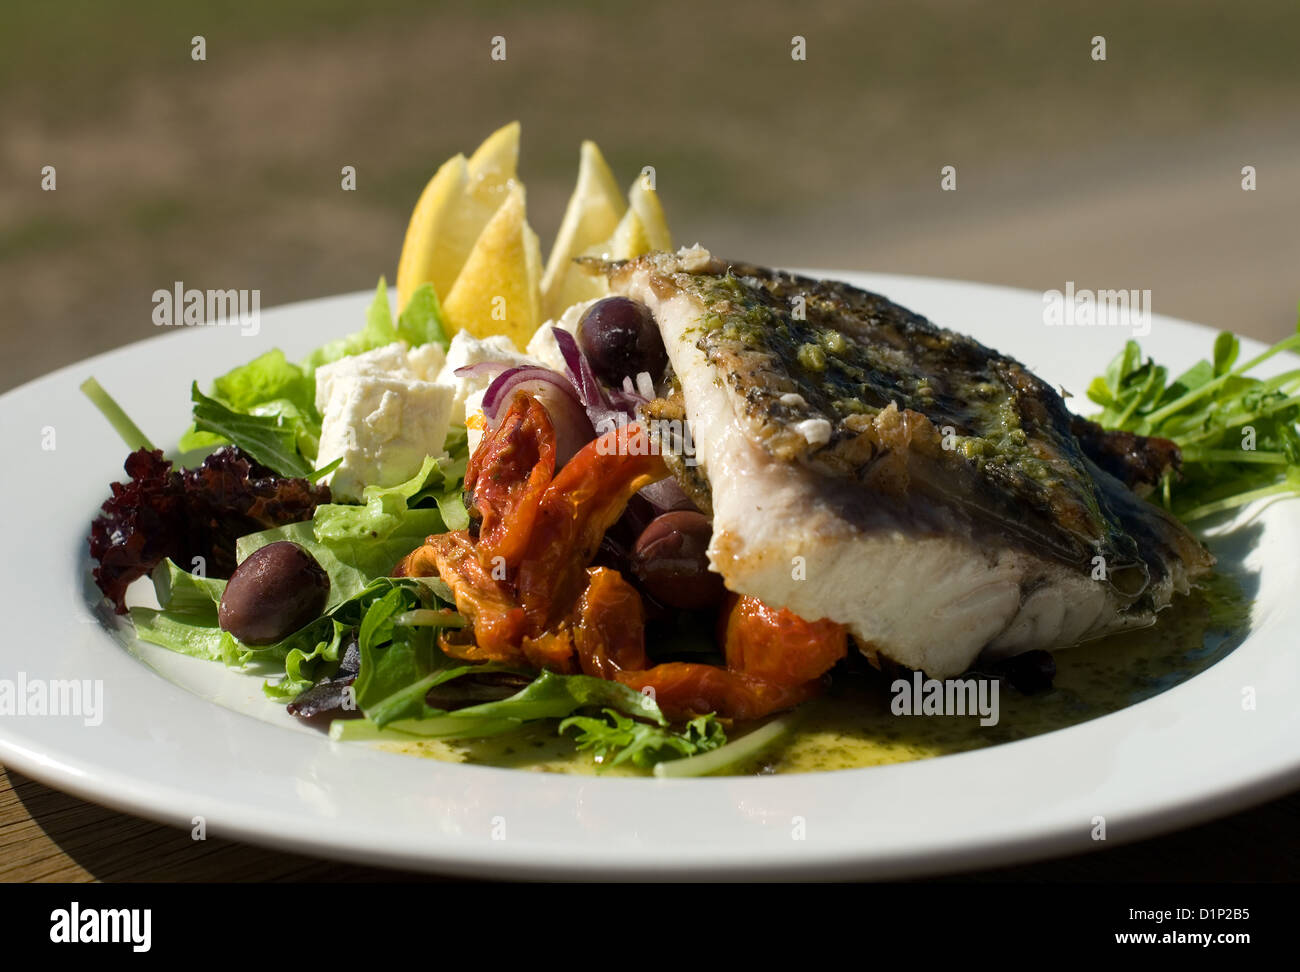 Loup de mer grillé, servi avec une salade à la grecque Photo Stock - Alamy